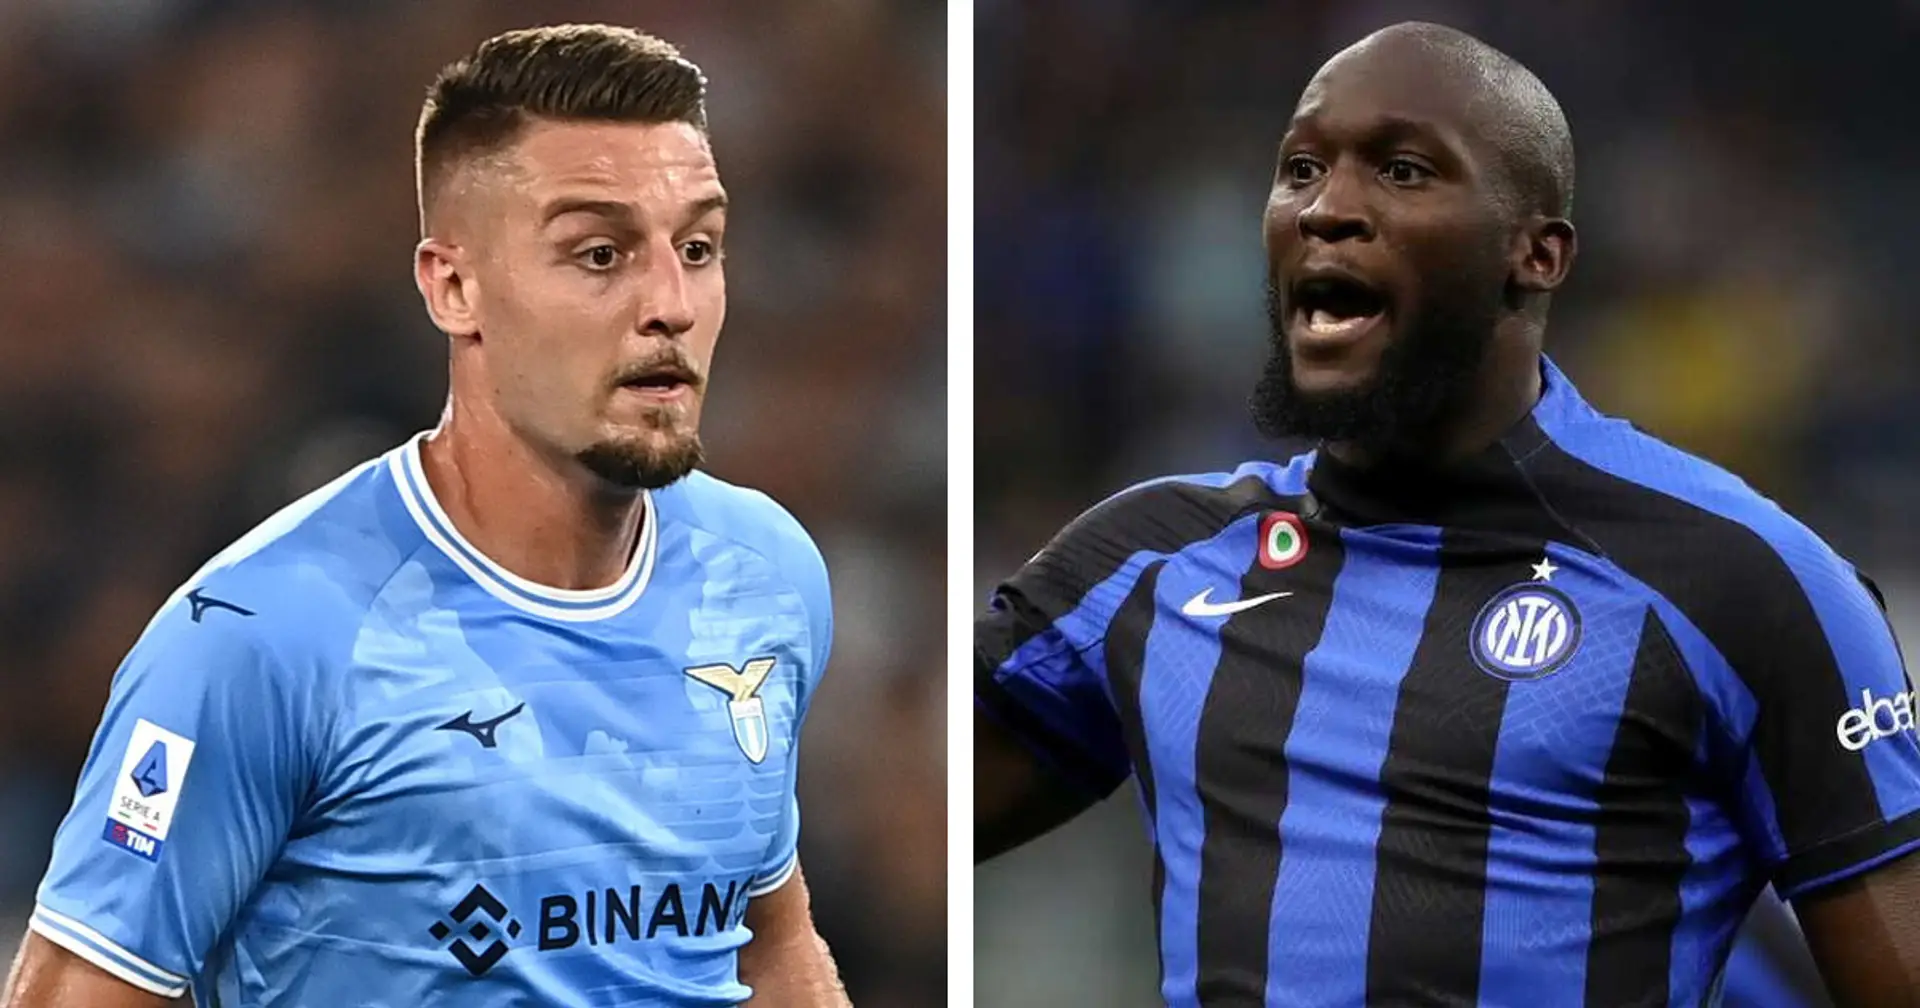 Le TOP 3 notizie di mercato sull'Inter e le migliori trattative delle rivali in Serie A di ieri